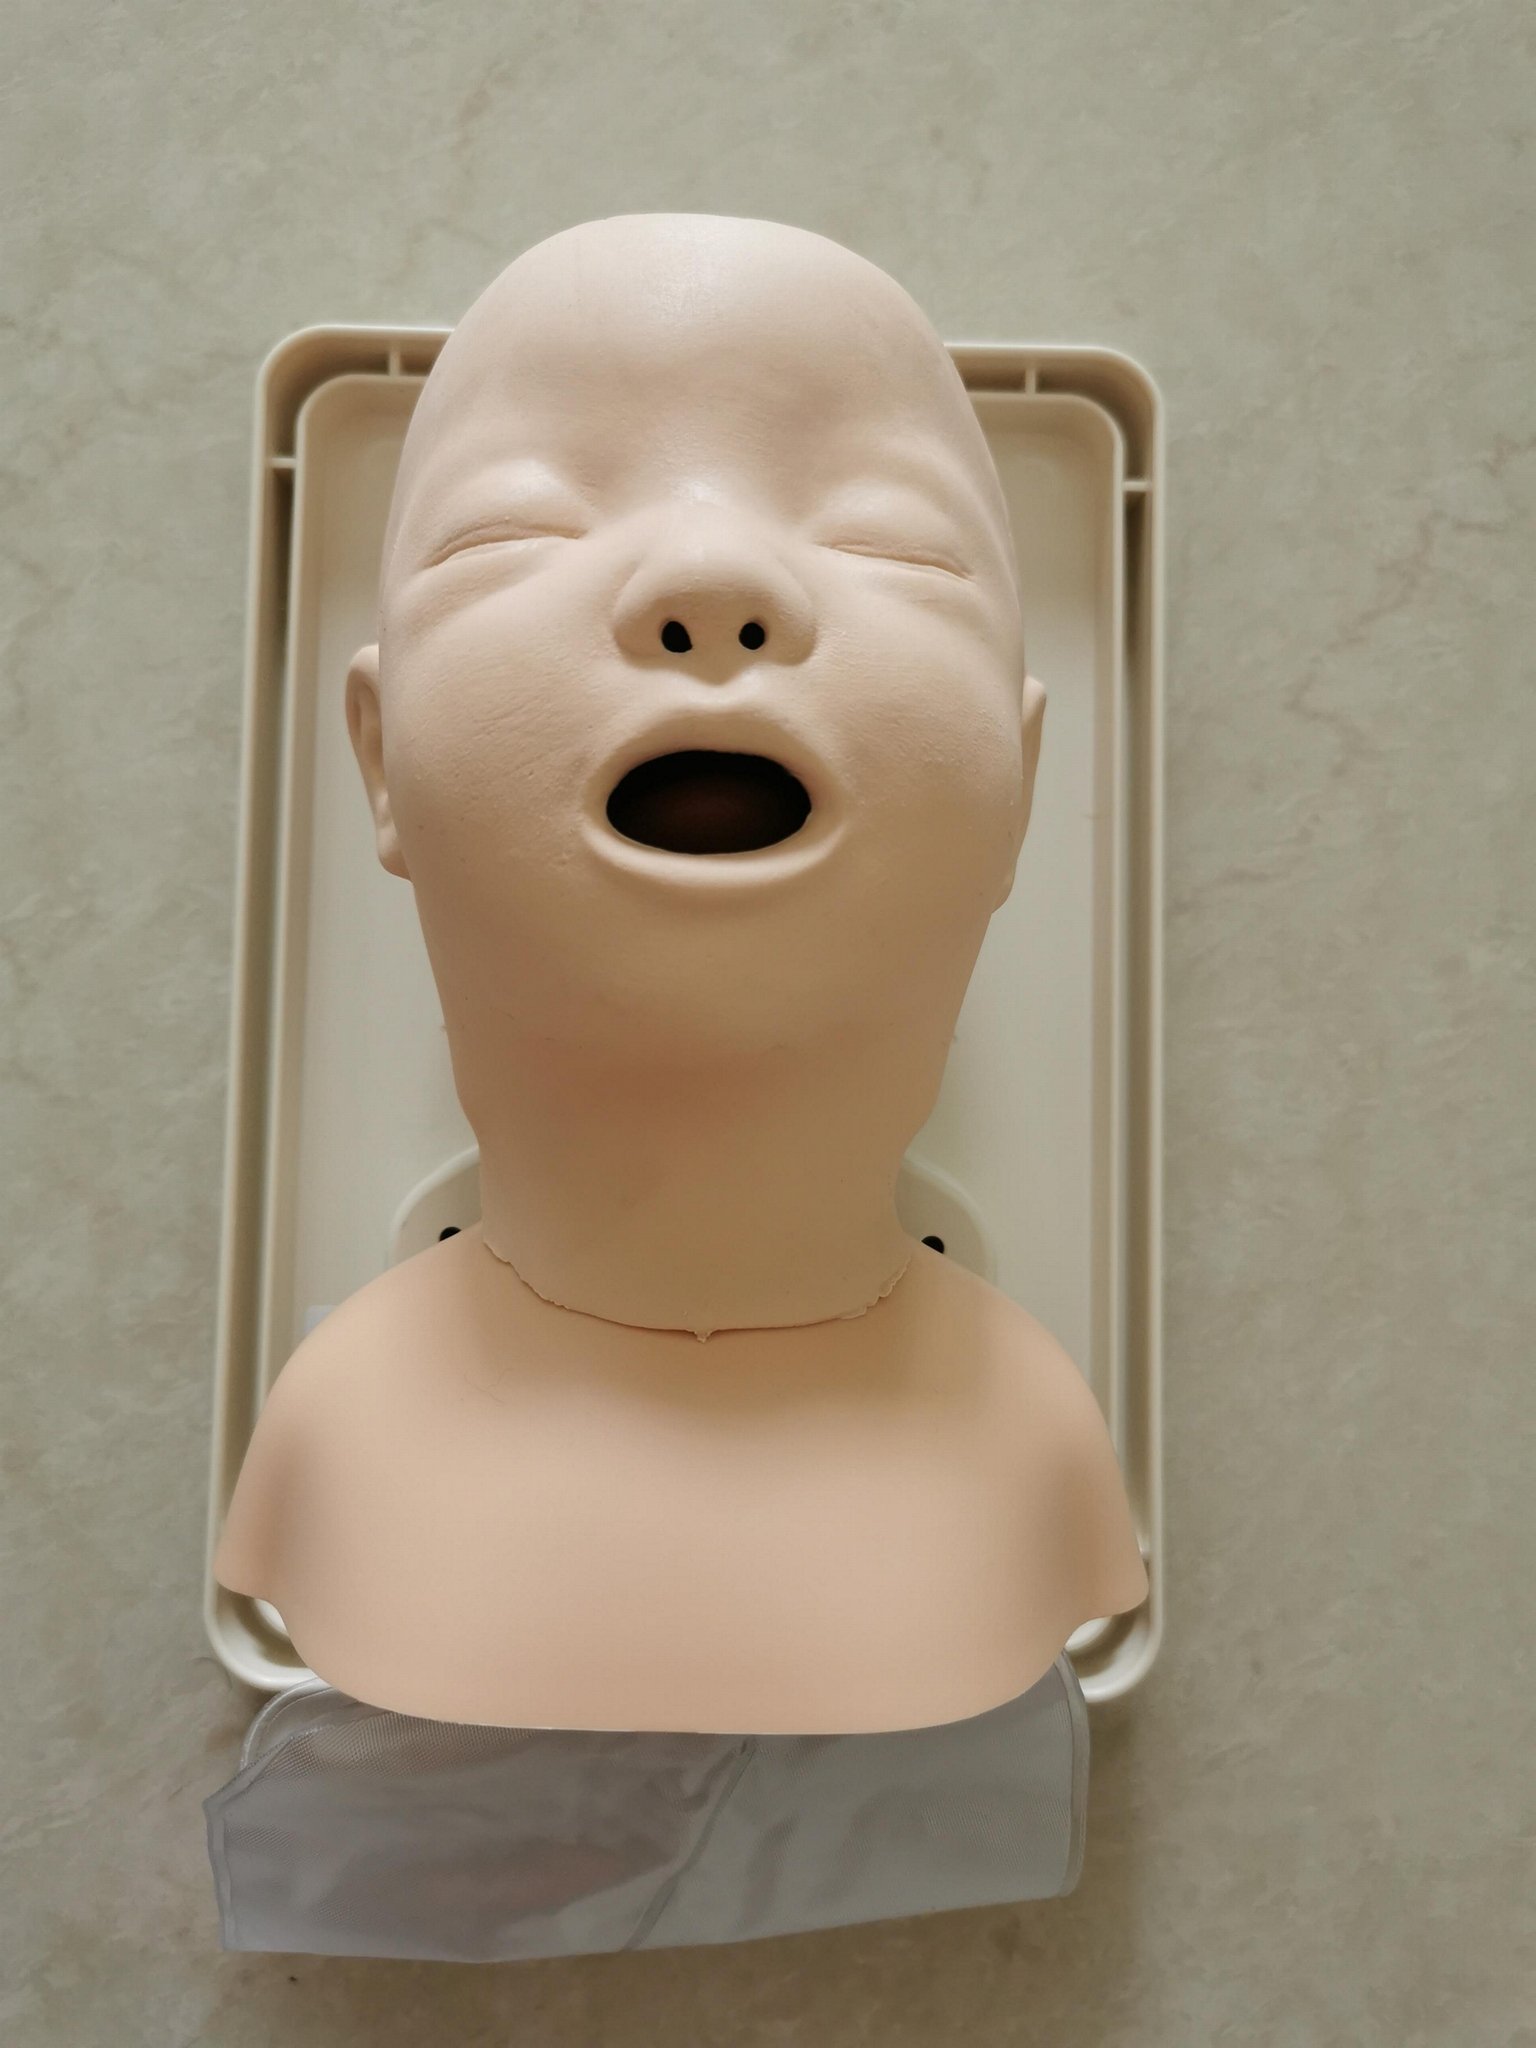 挪度婴儿气管插管训练模型250-00250，小儿气道管理模型 3